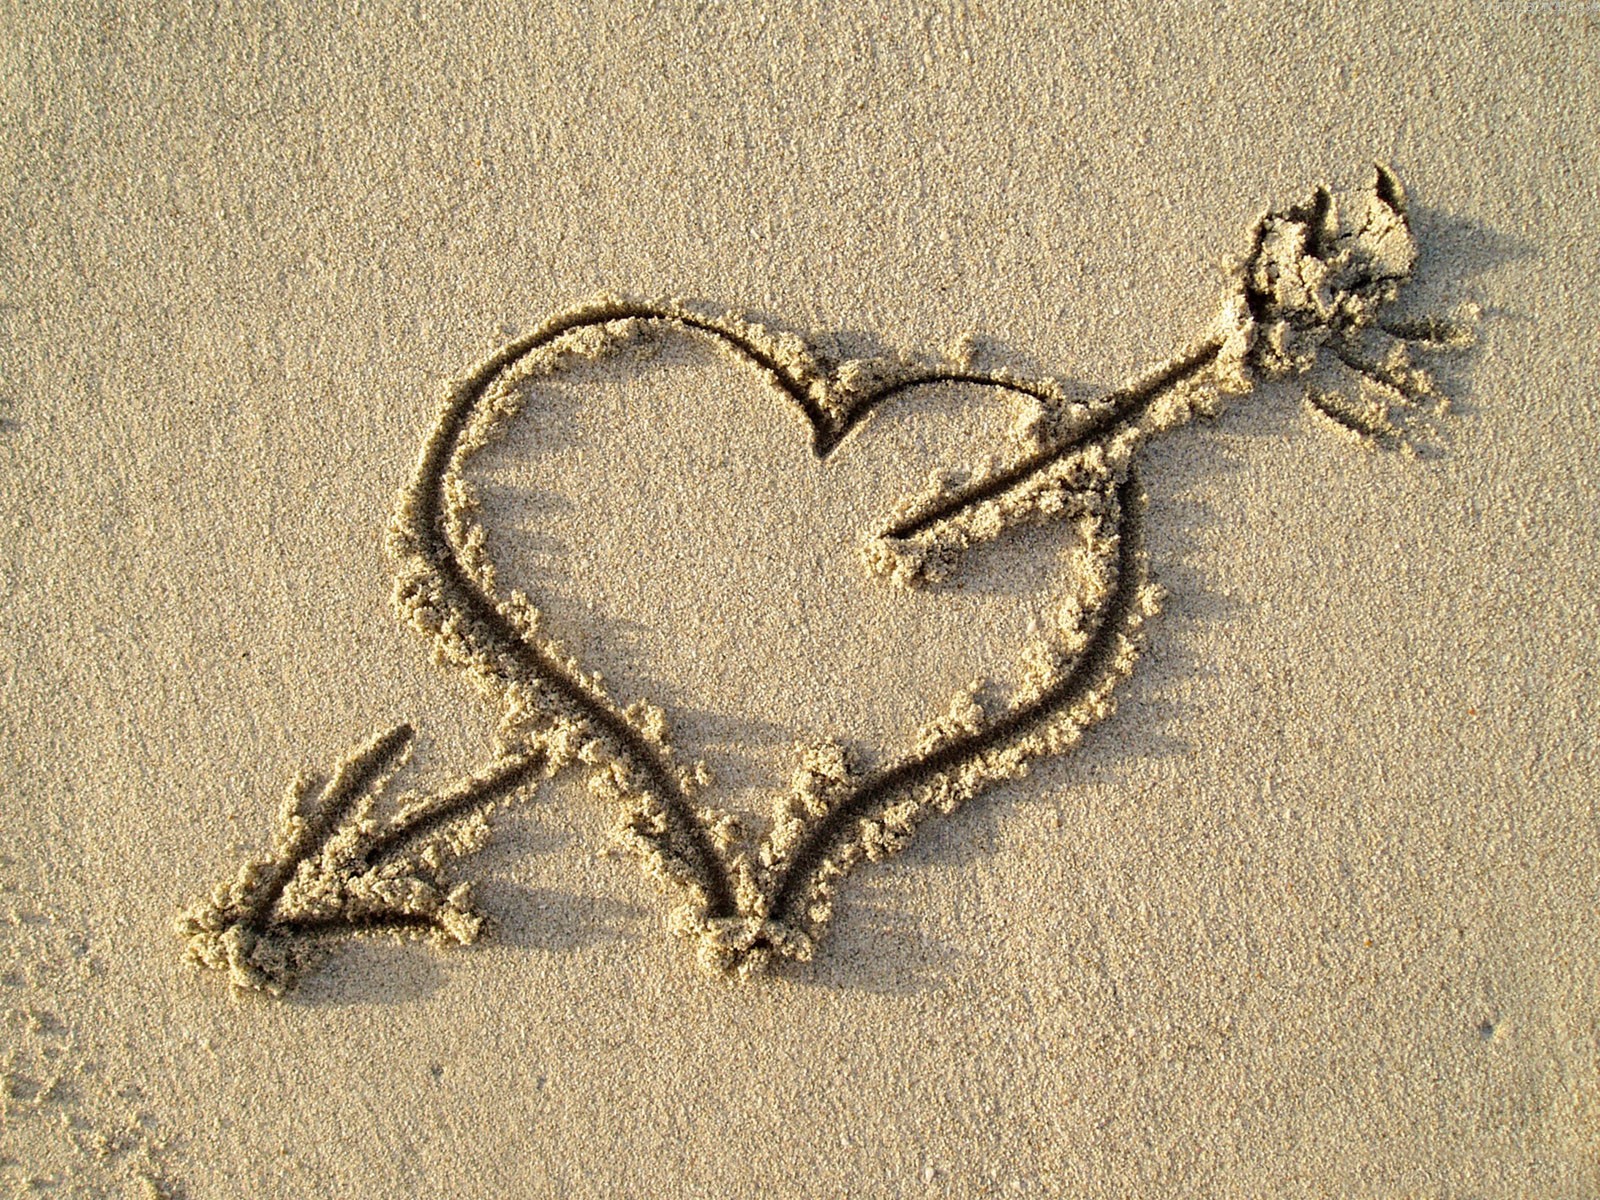 Сердце на песке